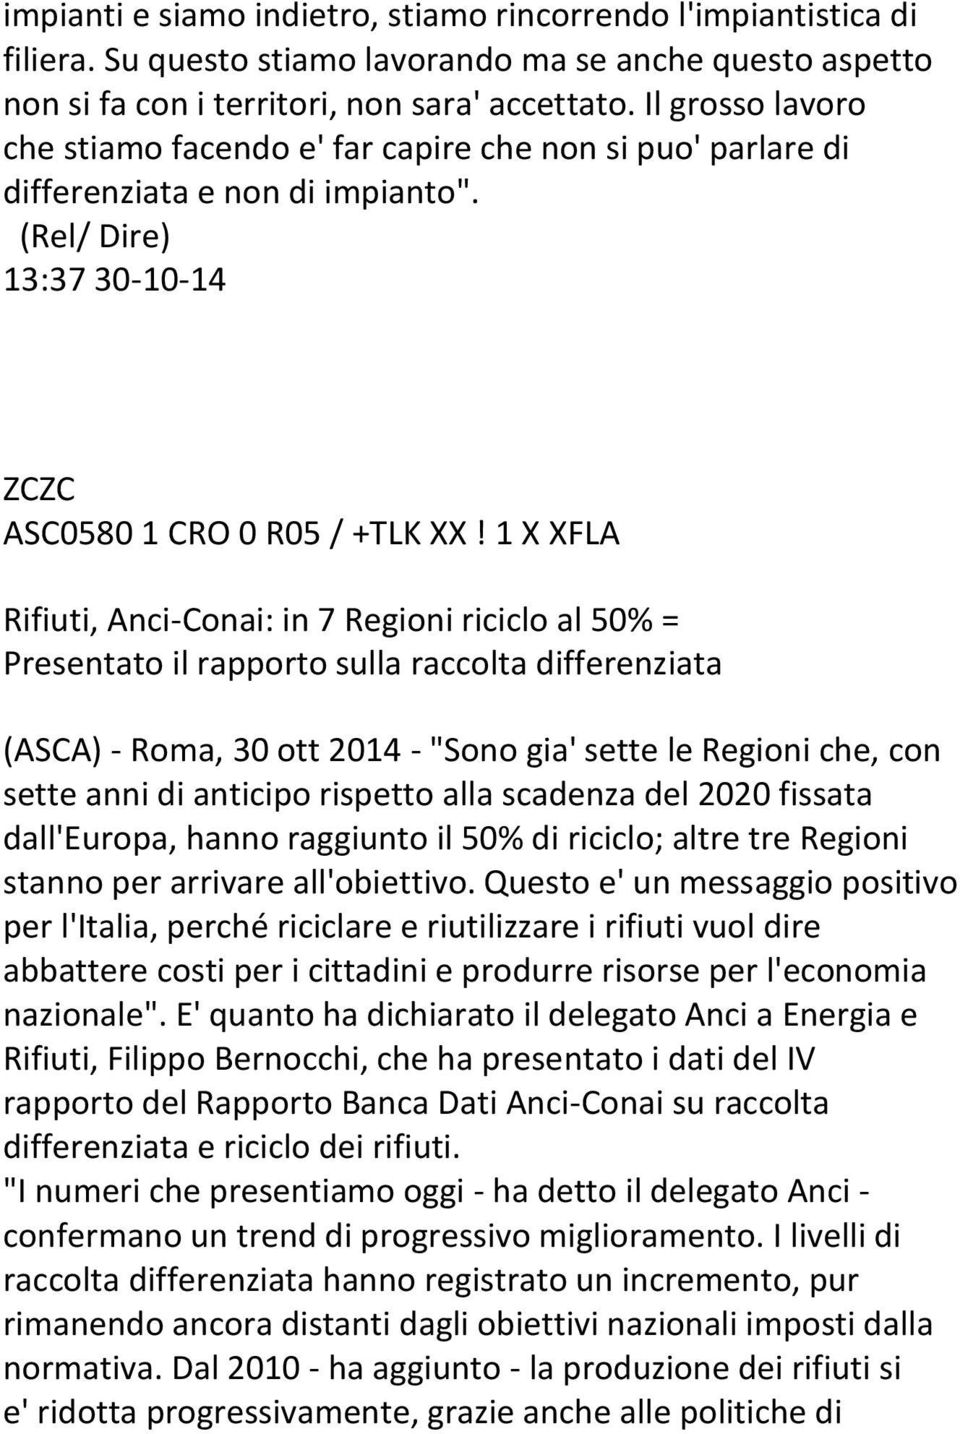 1 X XFLA Rifiuti, Anci-Conai: in 7 Regioni riciclo al 50% = Presentato il rapporto sulla raccolta differenziata (ASCA) - Roma, 30 ott 2014 - "Sono gia' sette le Regioni che, con sette anni di